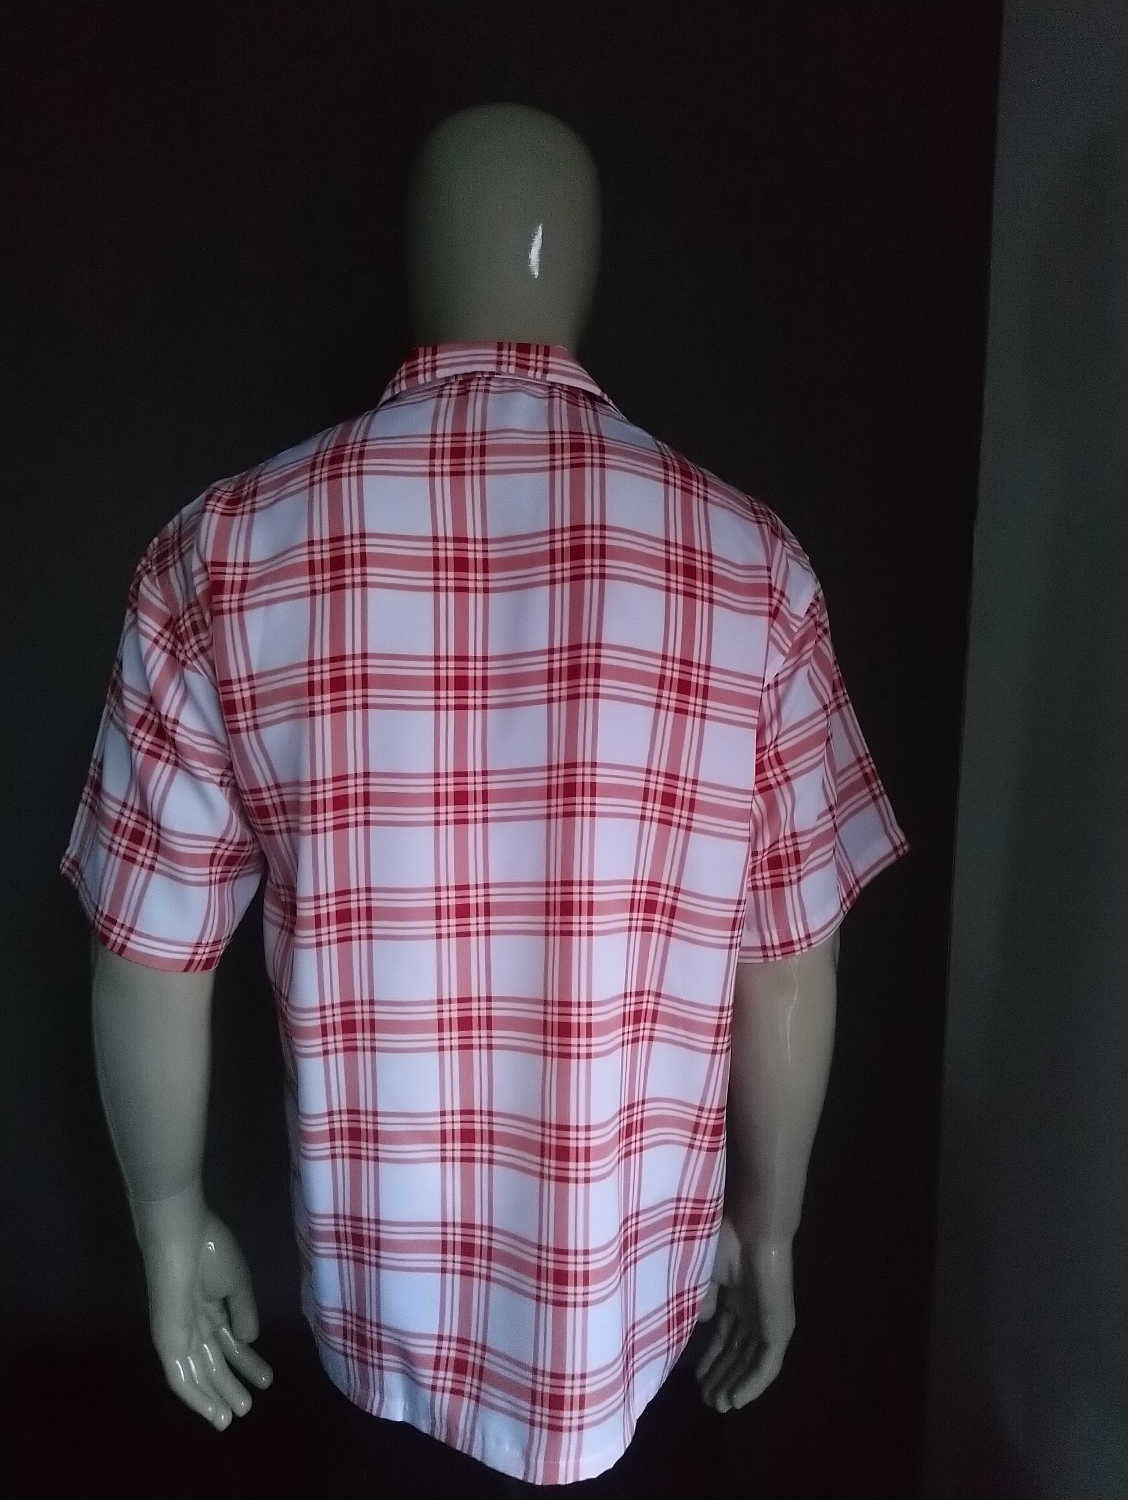 Supercool-Hemd mit kurzen Ärmeln. Rotes rosa weißes kariertes Motiv. Größe L.